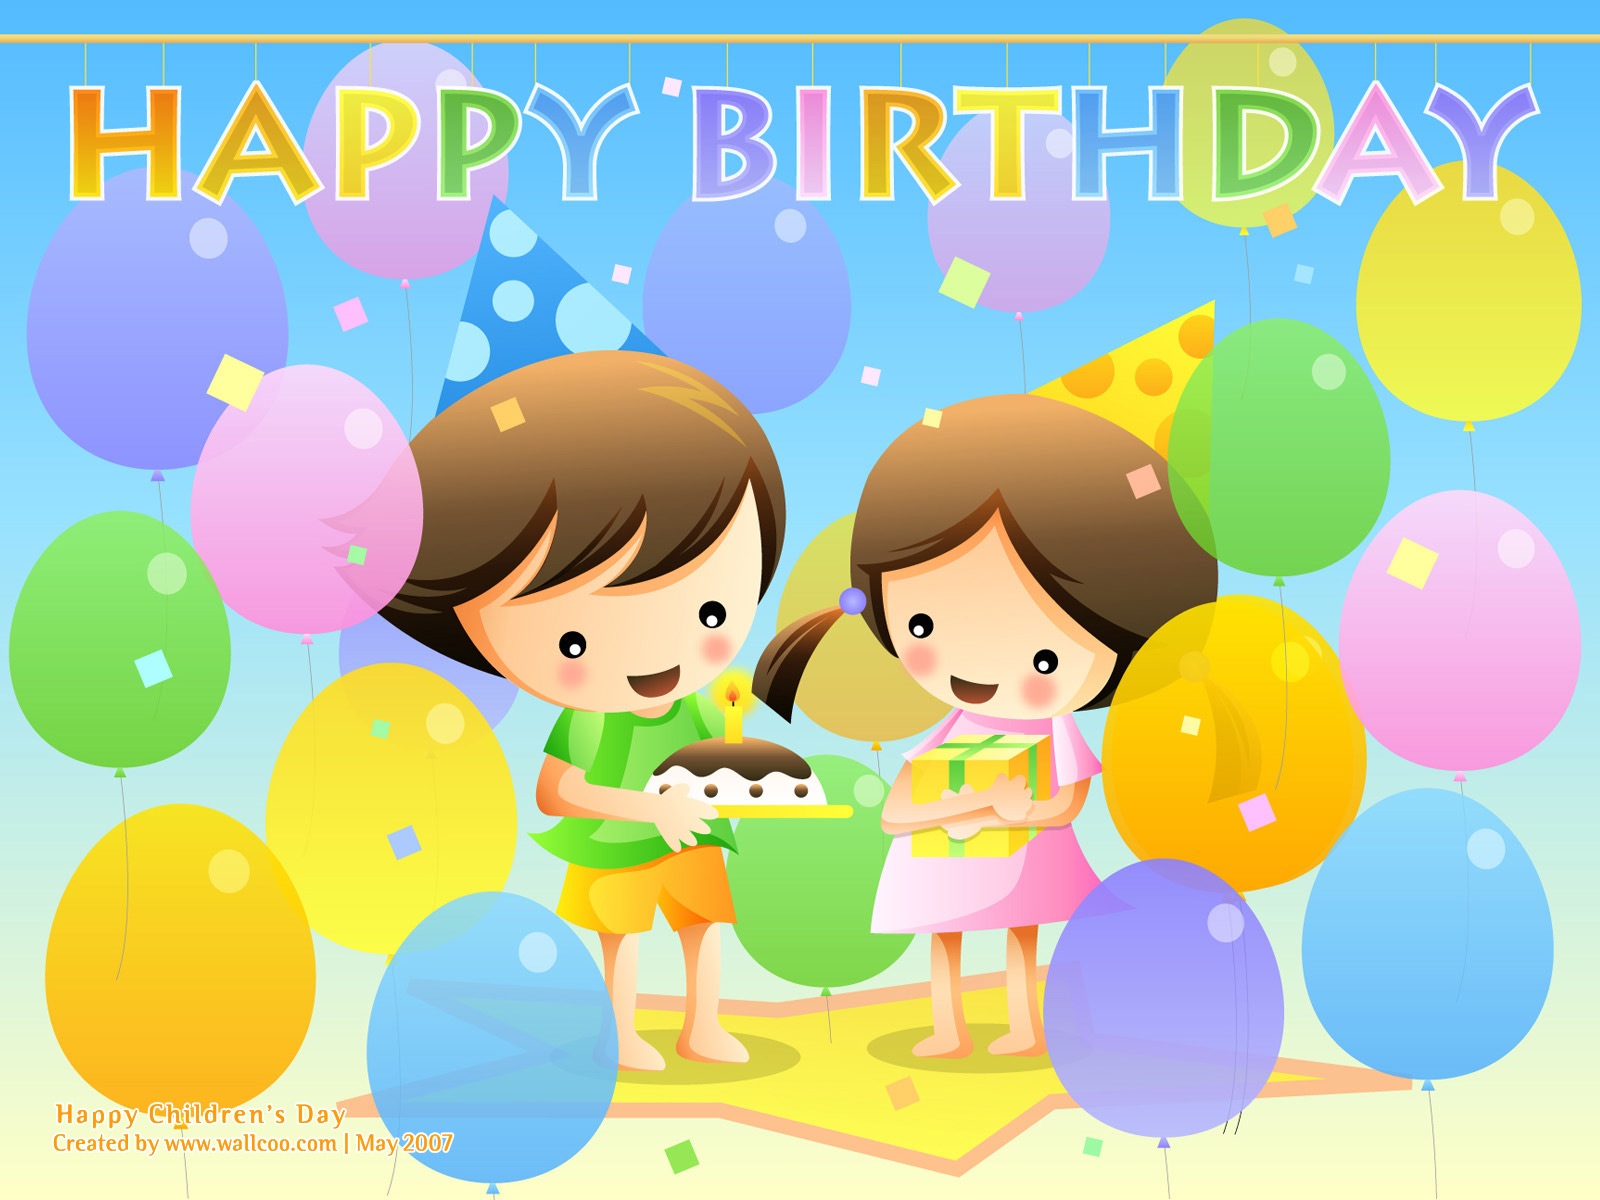 Childrens-Day-Happy-Birthday-697.jpg